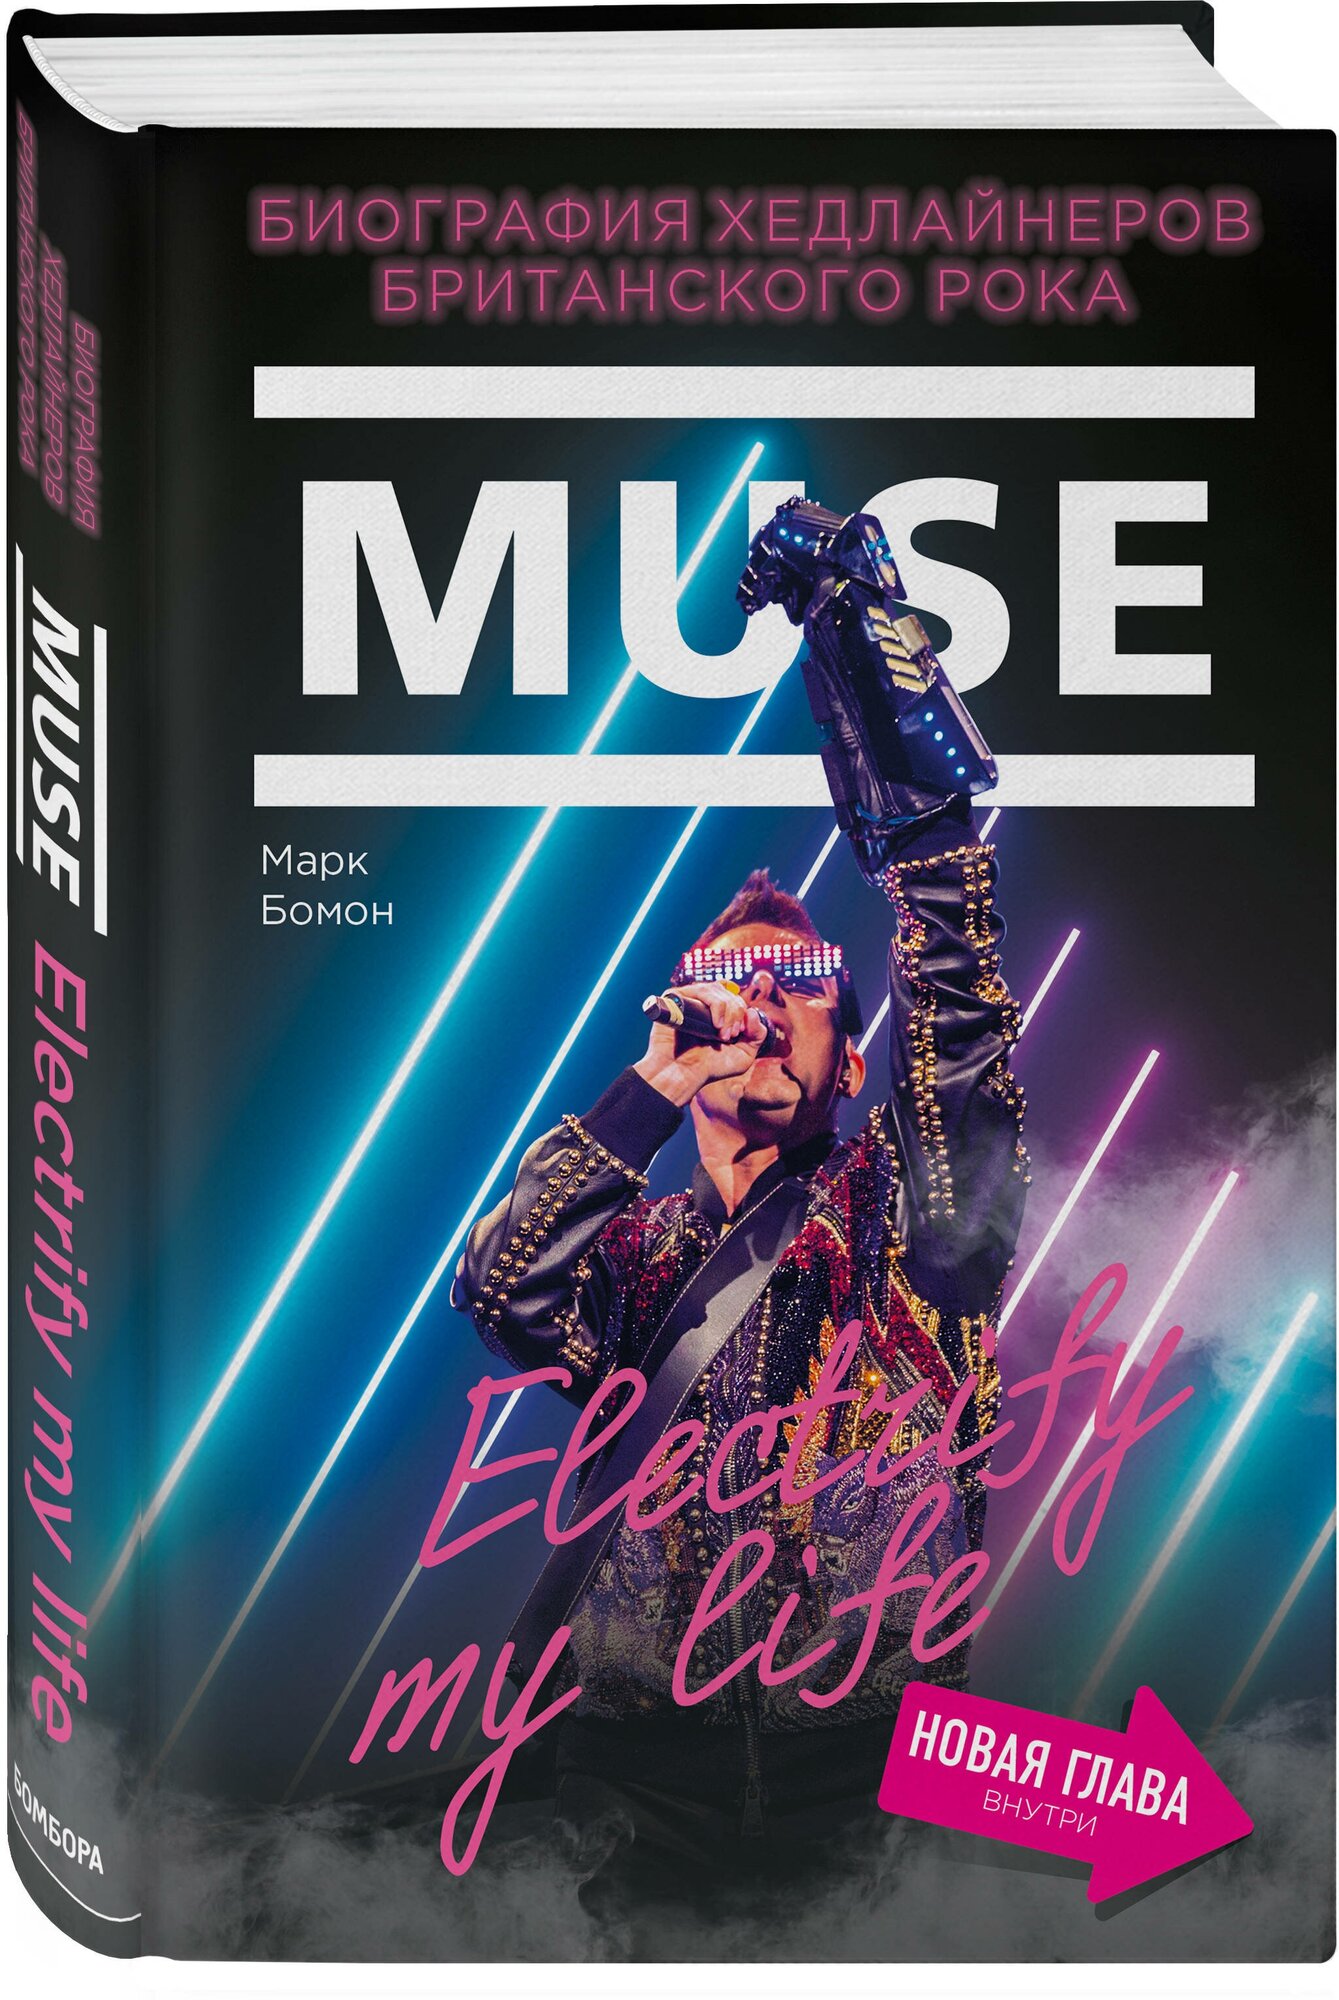 Бомон М. Muse. Electrify my life. Биография хедлайнеров британского рока (+ новая глава внутри)